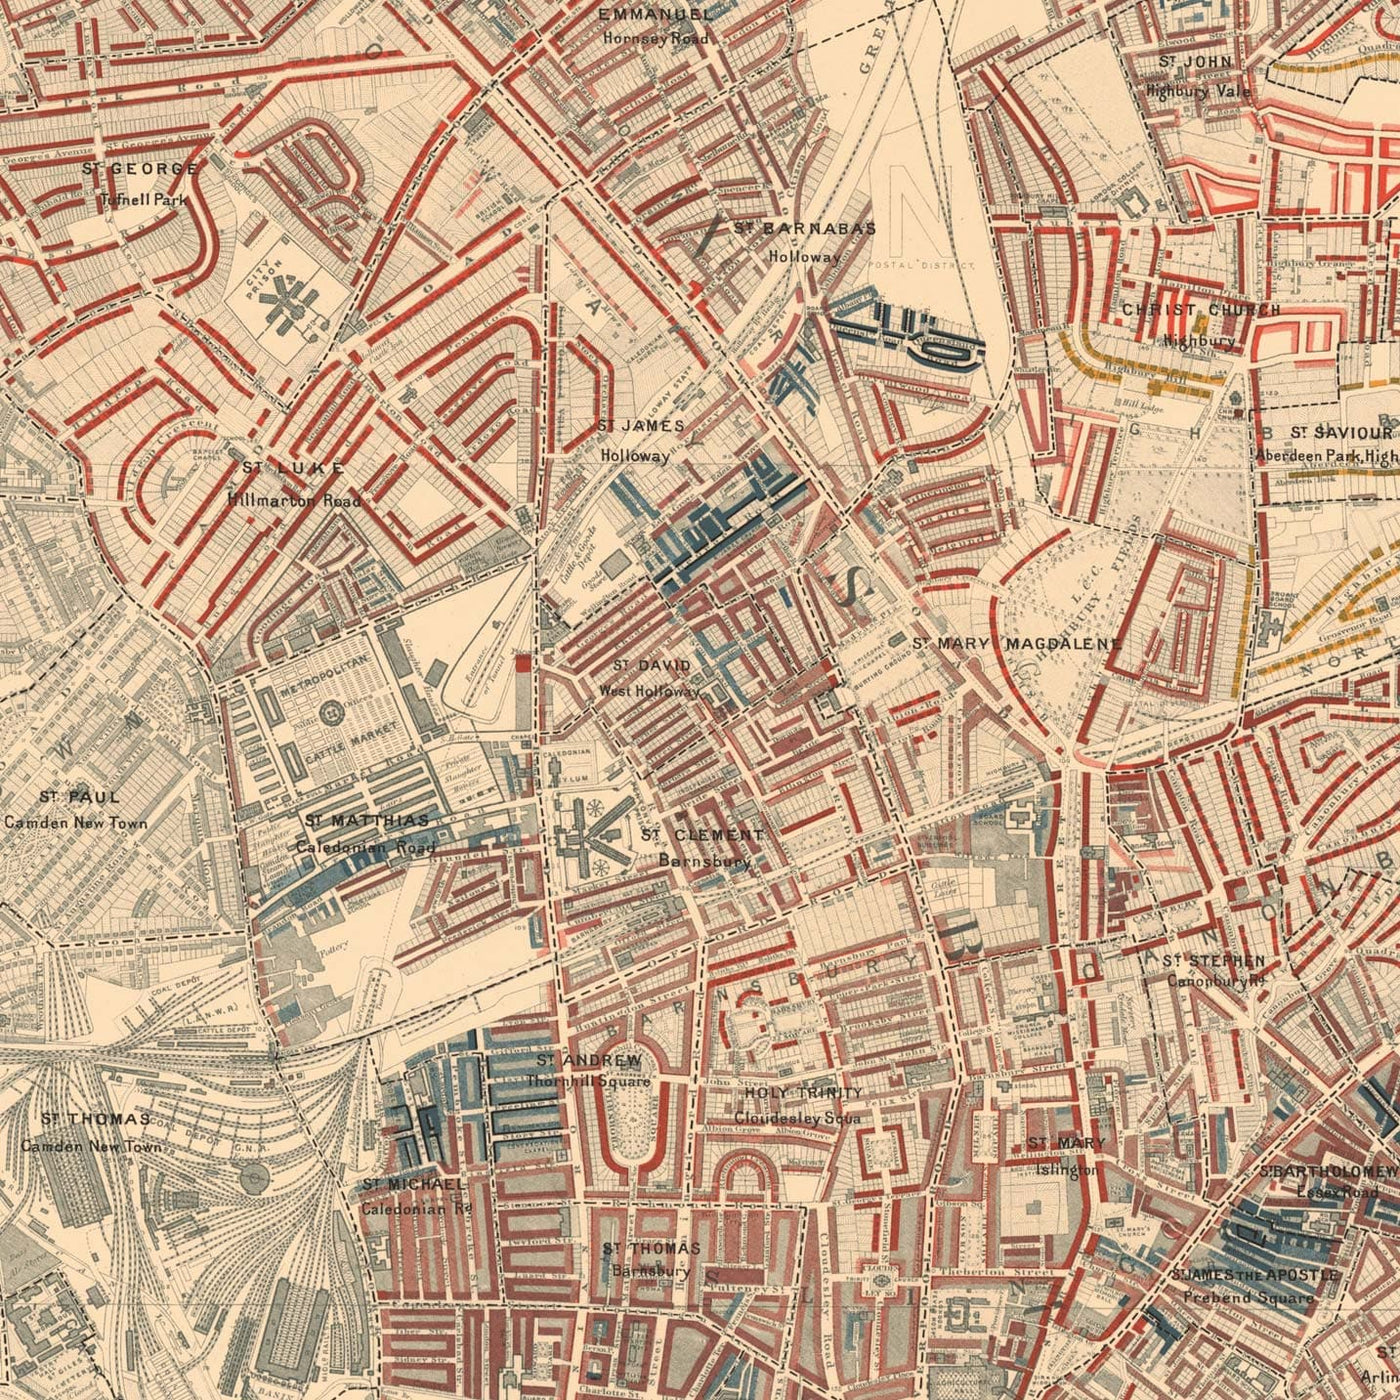 Karte der Londoner Armut 1898-9, nördlicher Bezirk, von Charles Booth - Camden, Islington, Stoke Newington, Kings Cross - N1, N1C, N5, N7, N16, N4